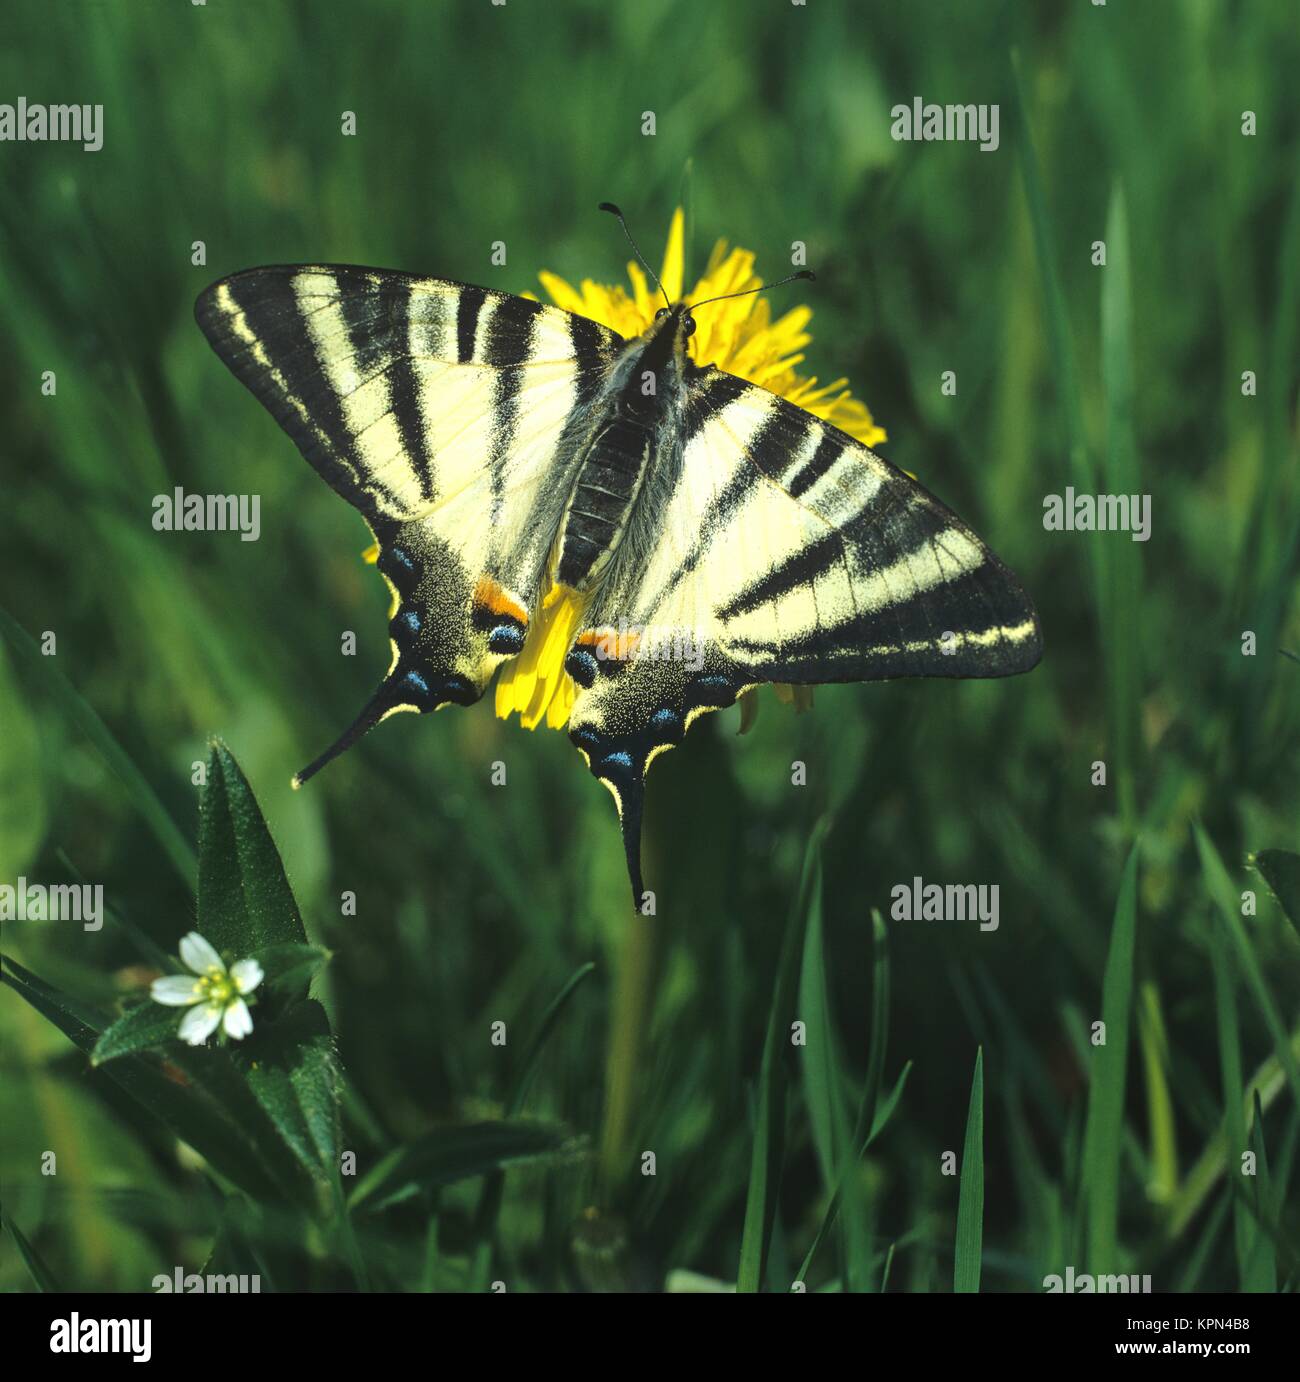 Segelfalter mit geöffneten Flügeln  auf Löwenzahnblüte, sehr seltener, großer Tagfalter Stock Photo